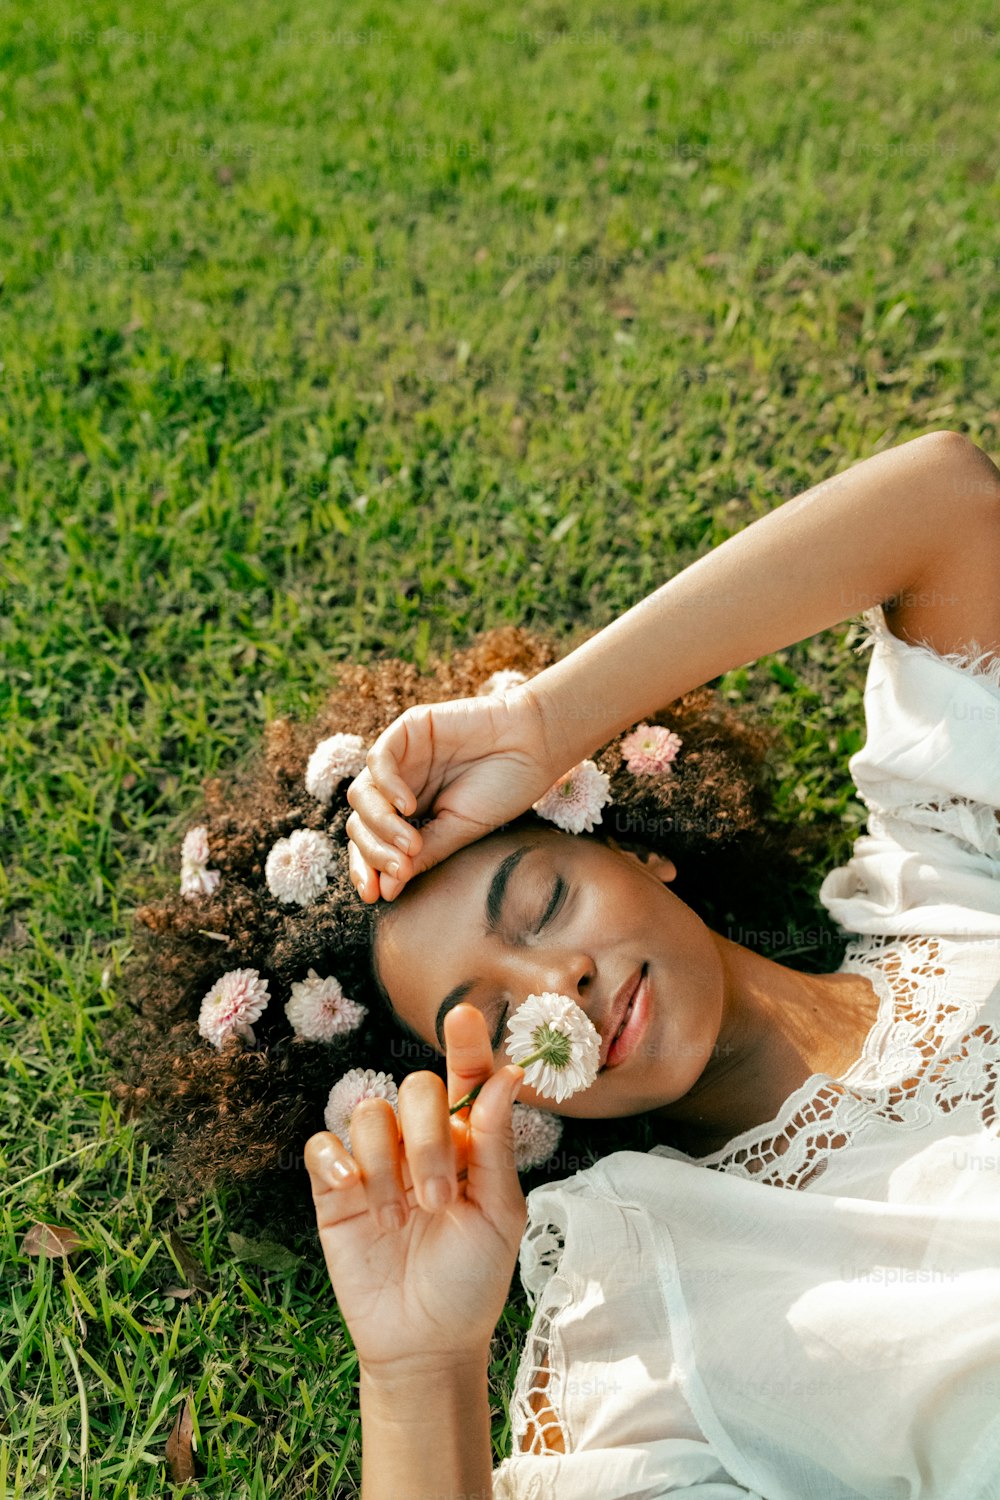 eine Frau, die mit einer Blume im Haar im Gras liegt